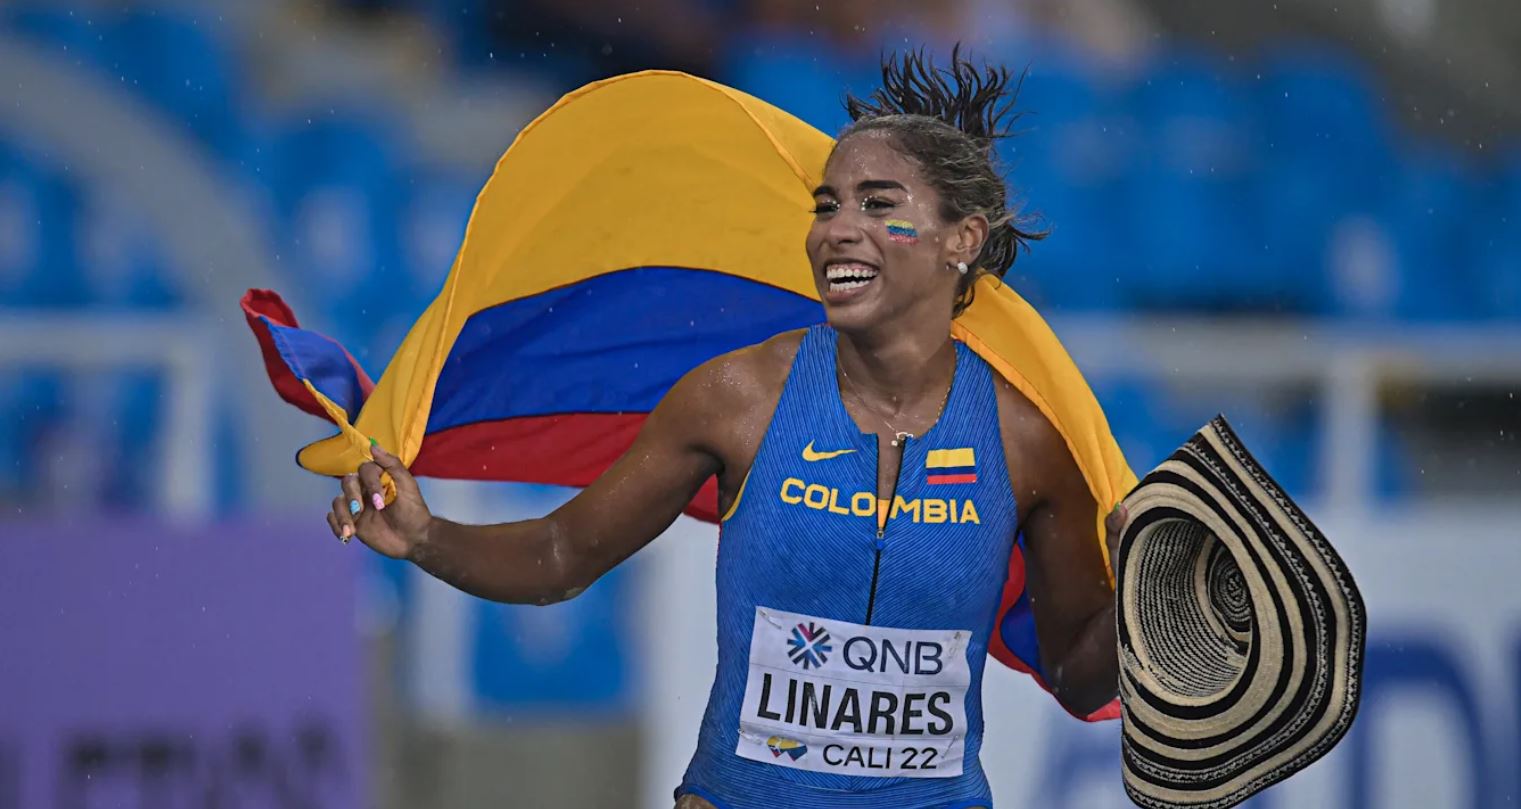 Natalia Linares, joya del atletismo colombianos y heredera de Caterine Ibargüen, se ilusiona con ganar medalla en sus primeros Juegos Olímpicos.